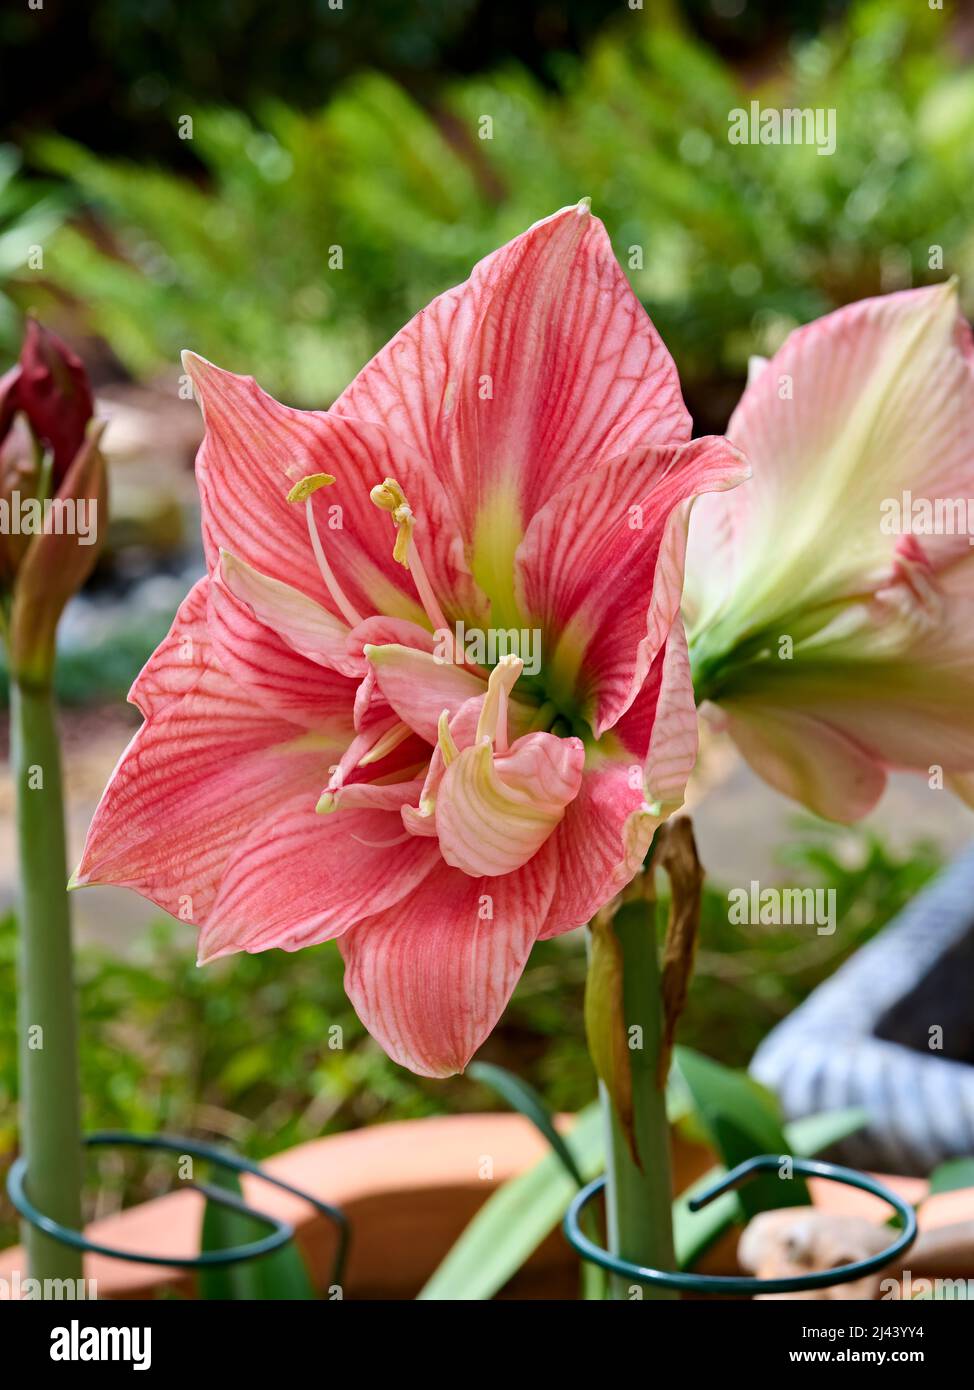 Rosa Lilium longiflorum oder Osterlilie in Blüte oder blühende Blume. Stockfoto